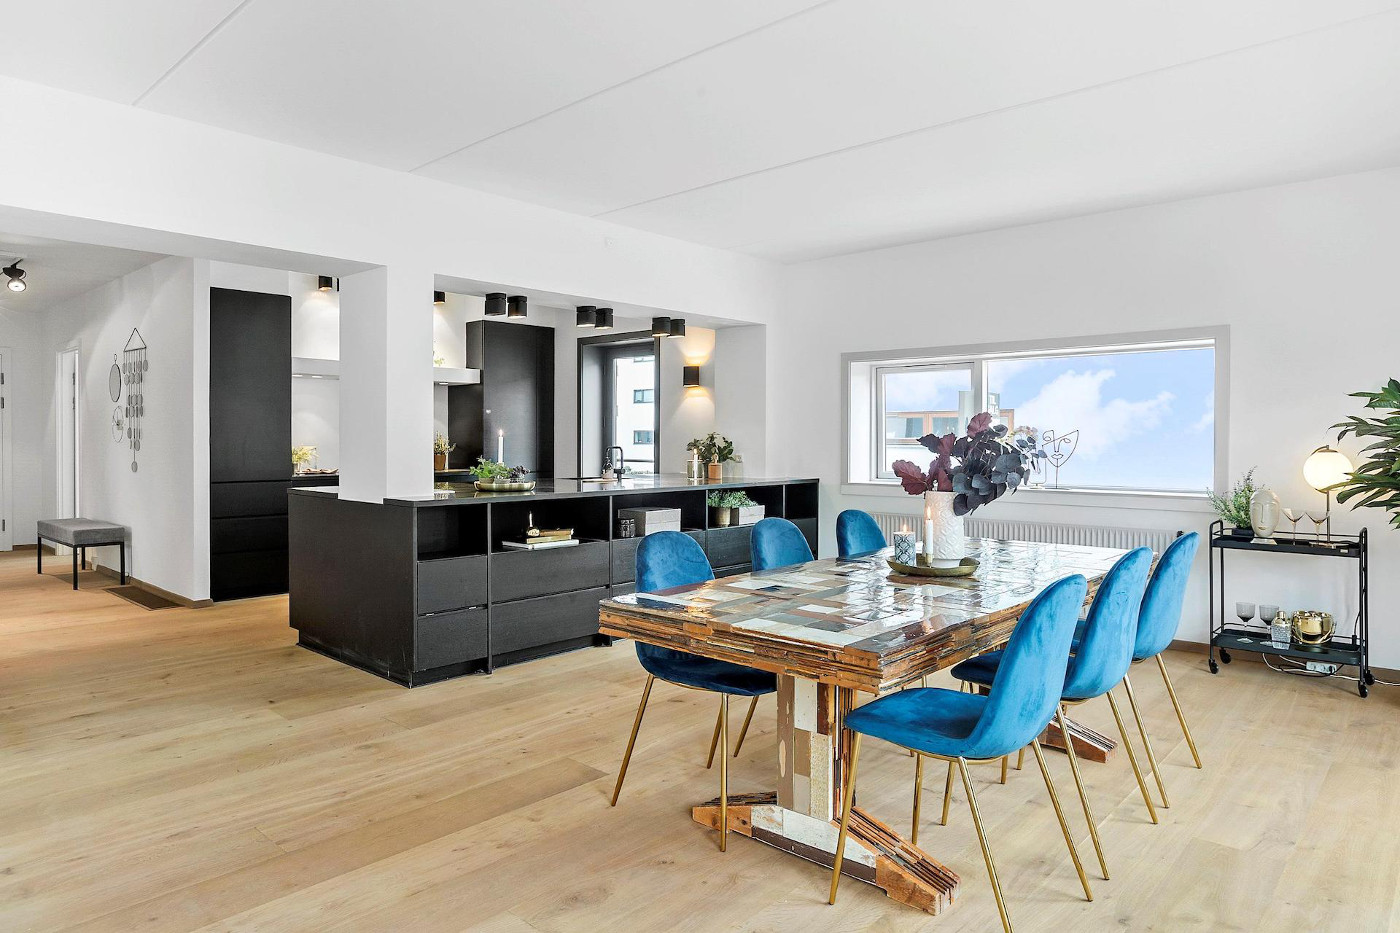 Christian Poulsen solgte sin lejlighed i København her i december 2020 for 12,8 millioner kroner. Foto: Siesbye Kapsch.